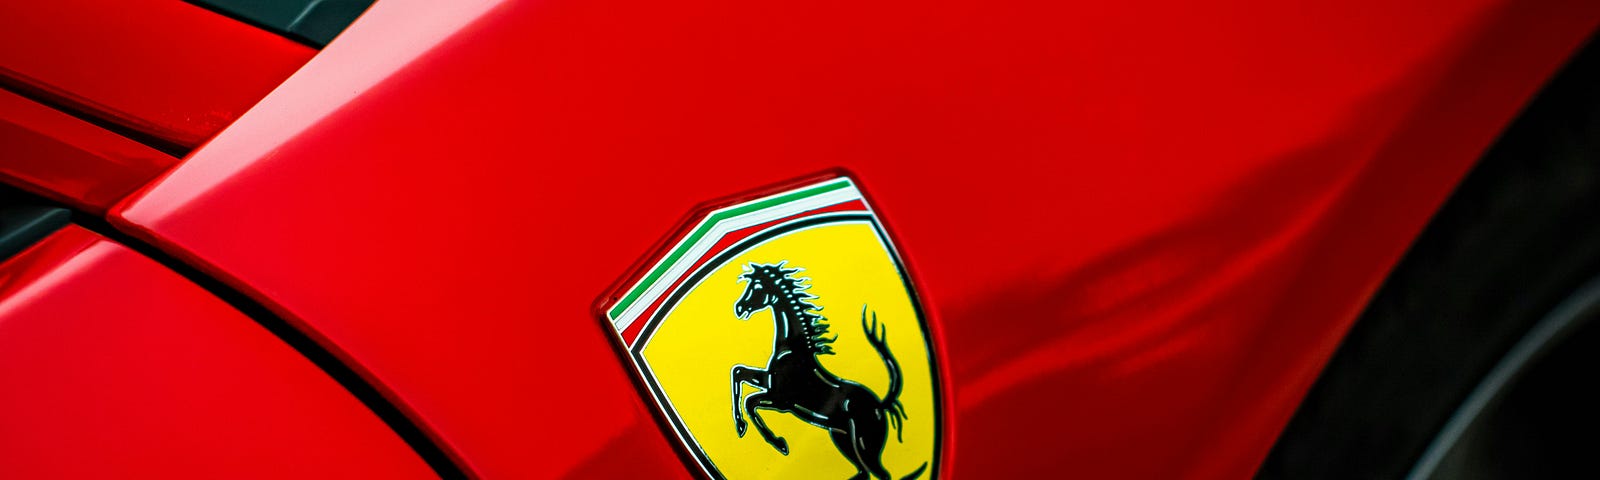 Close-up photo of a Ferrari.